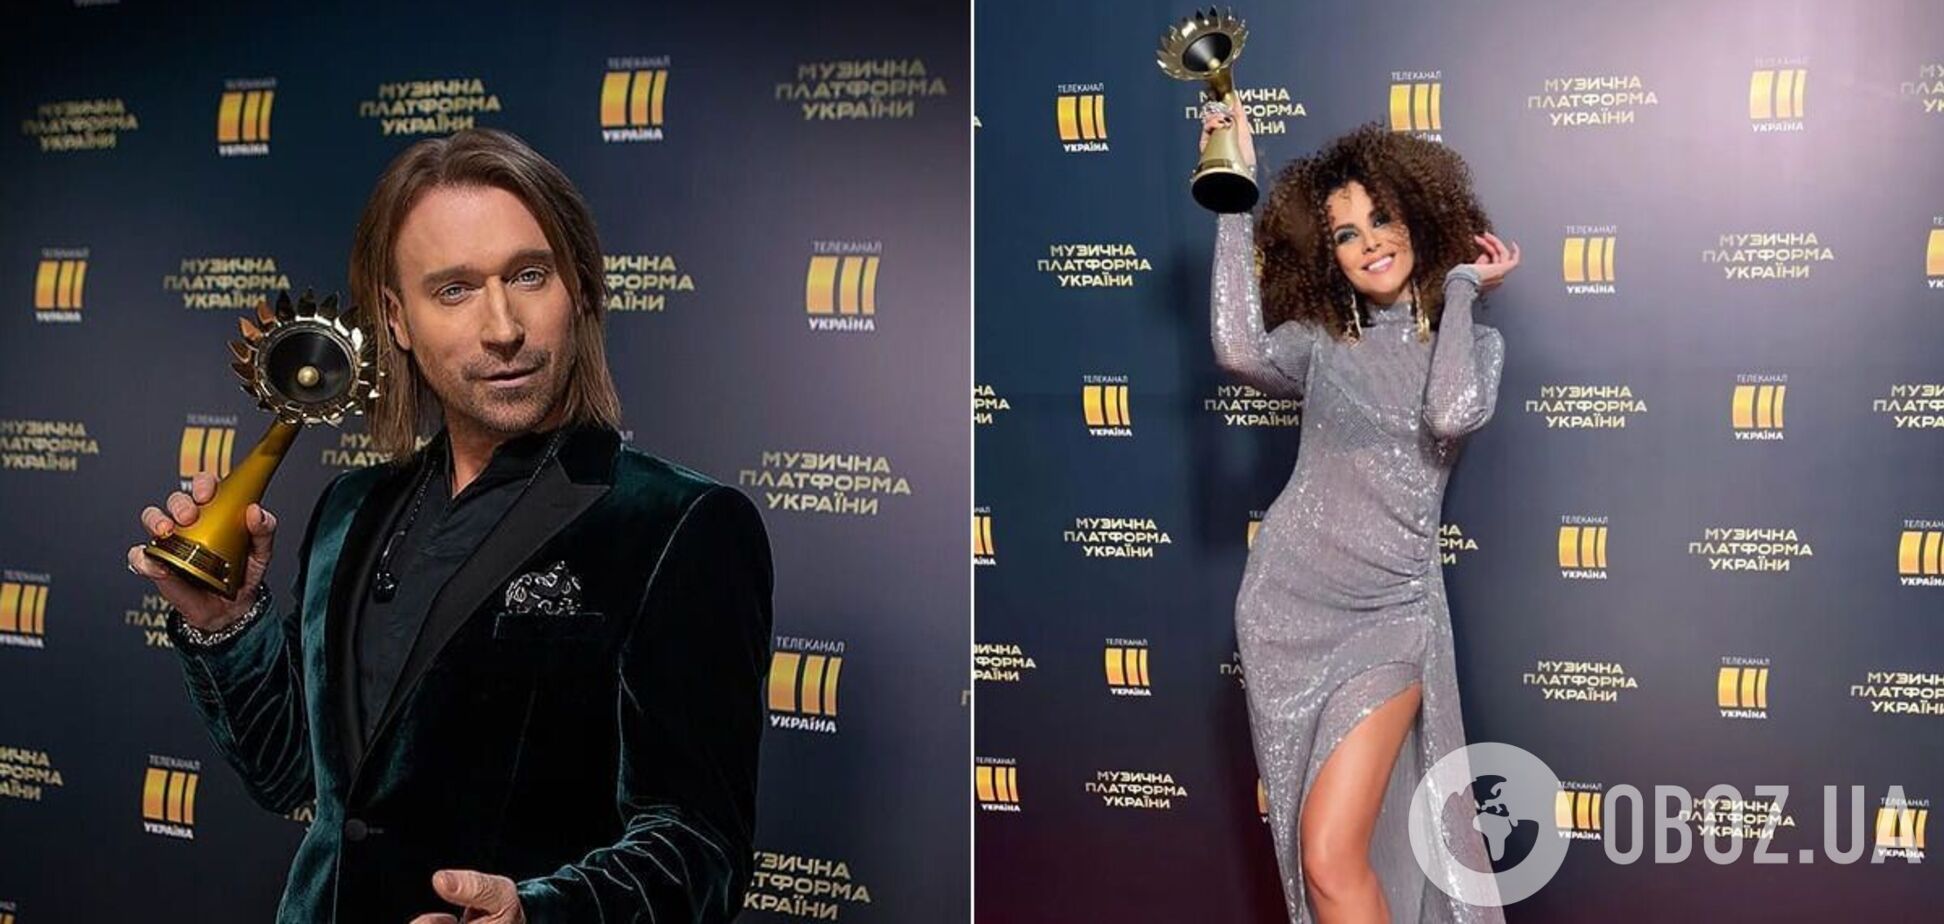 В Україні вручили премію 'Музична платформа': зірки похвалилися нагородами. Фото